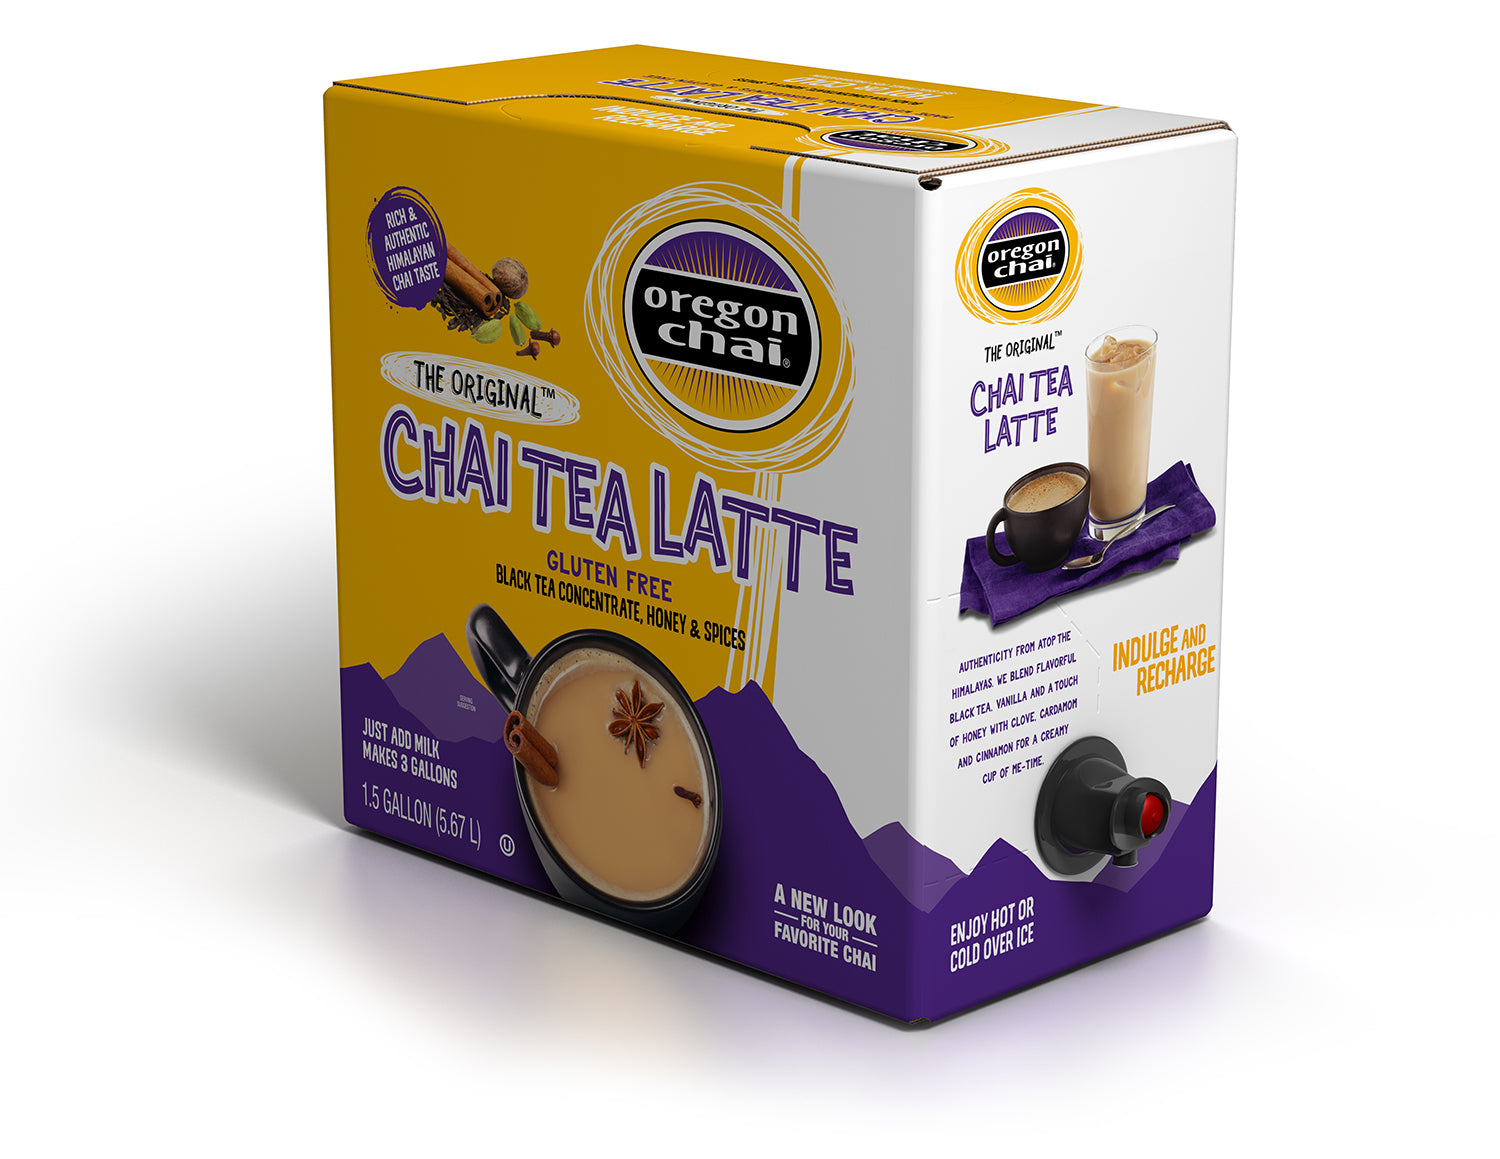 Oregon Chai Tea: The Original - 1.5 Gallon Bag in a Box